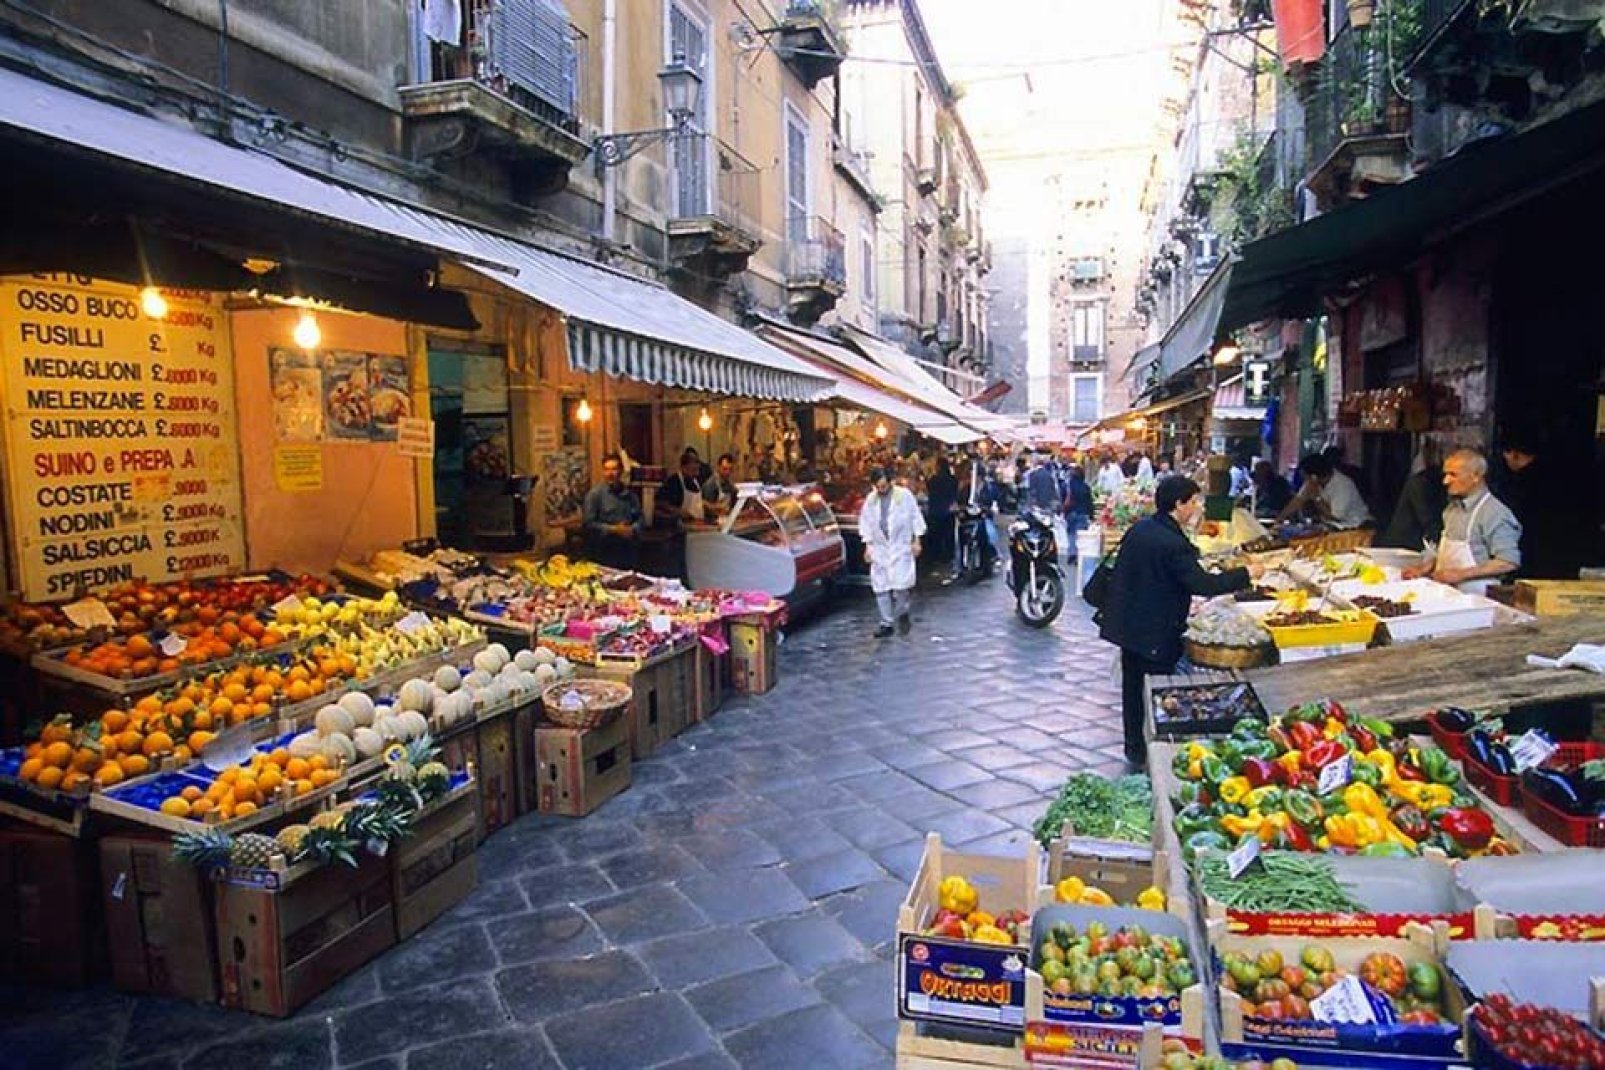 Catania cuenta con varios mercados importantes: el mercado del pescado de la Pescheria de Catania, así como el mercado de la plaza Carlo Alberto, conocido con el sobrenombre de Fera 'o Luni.